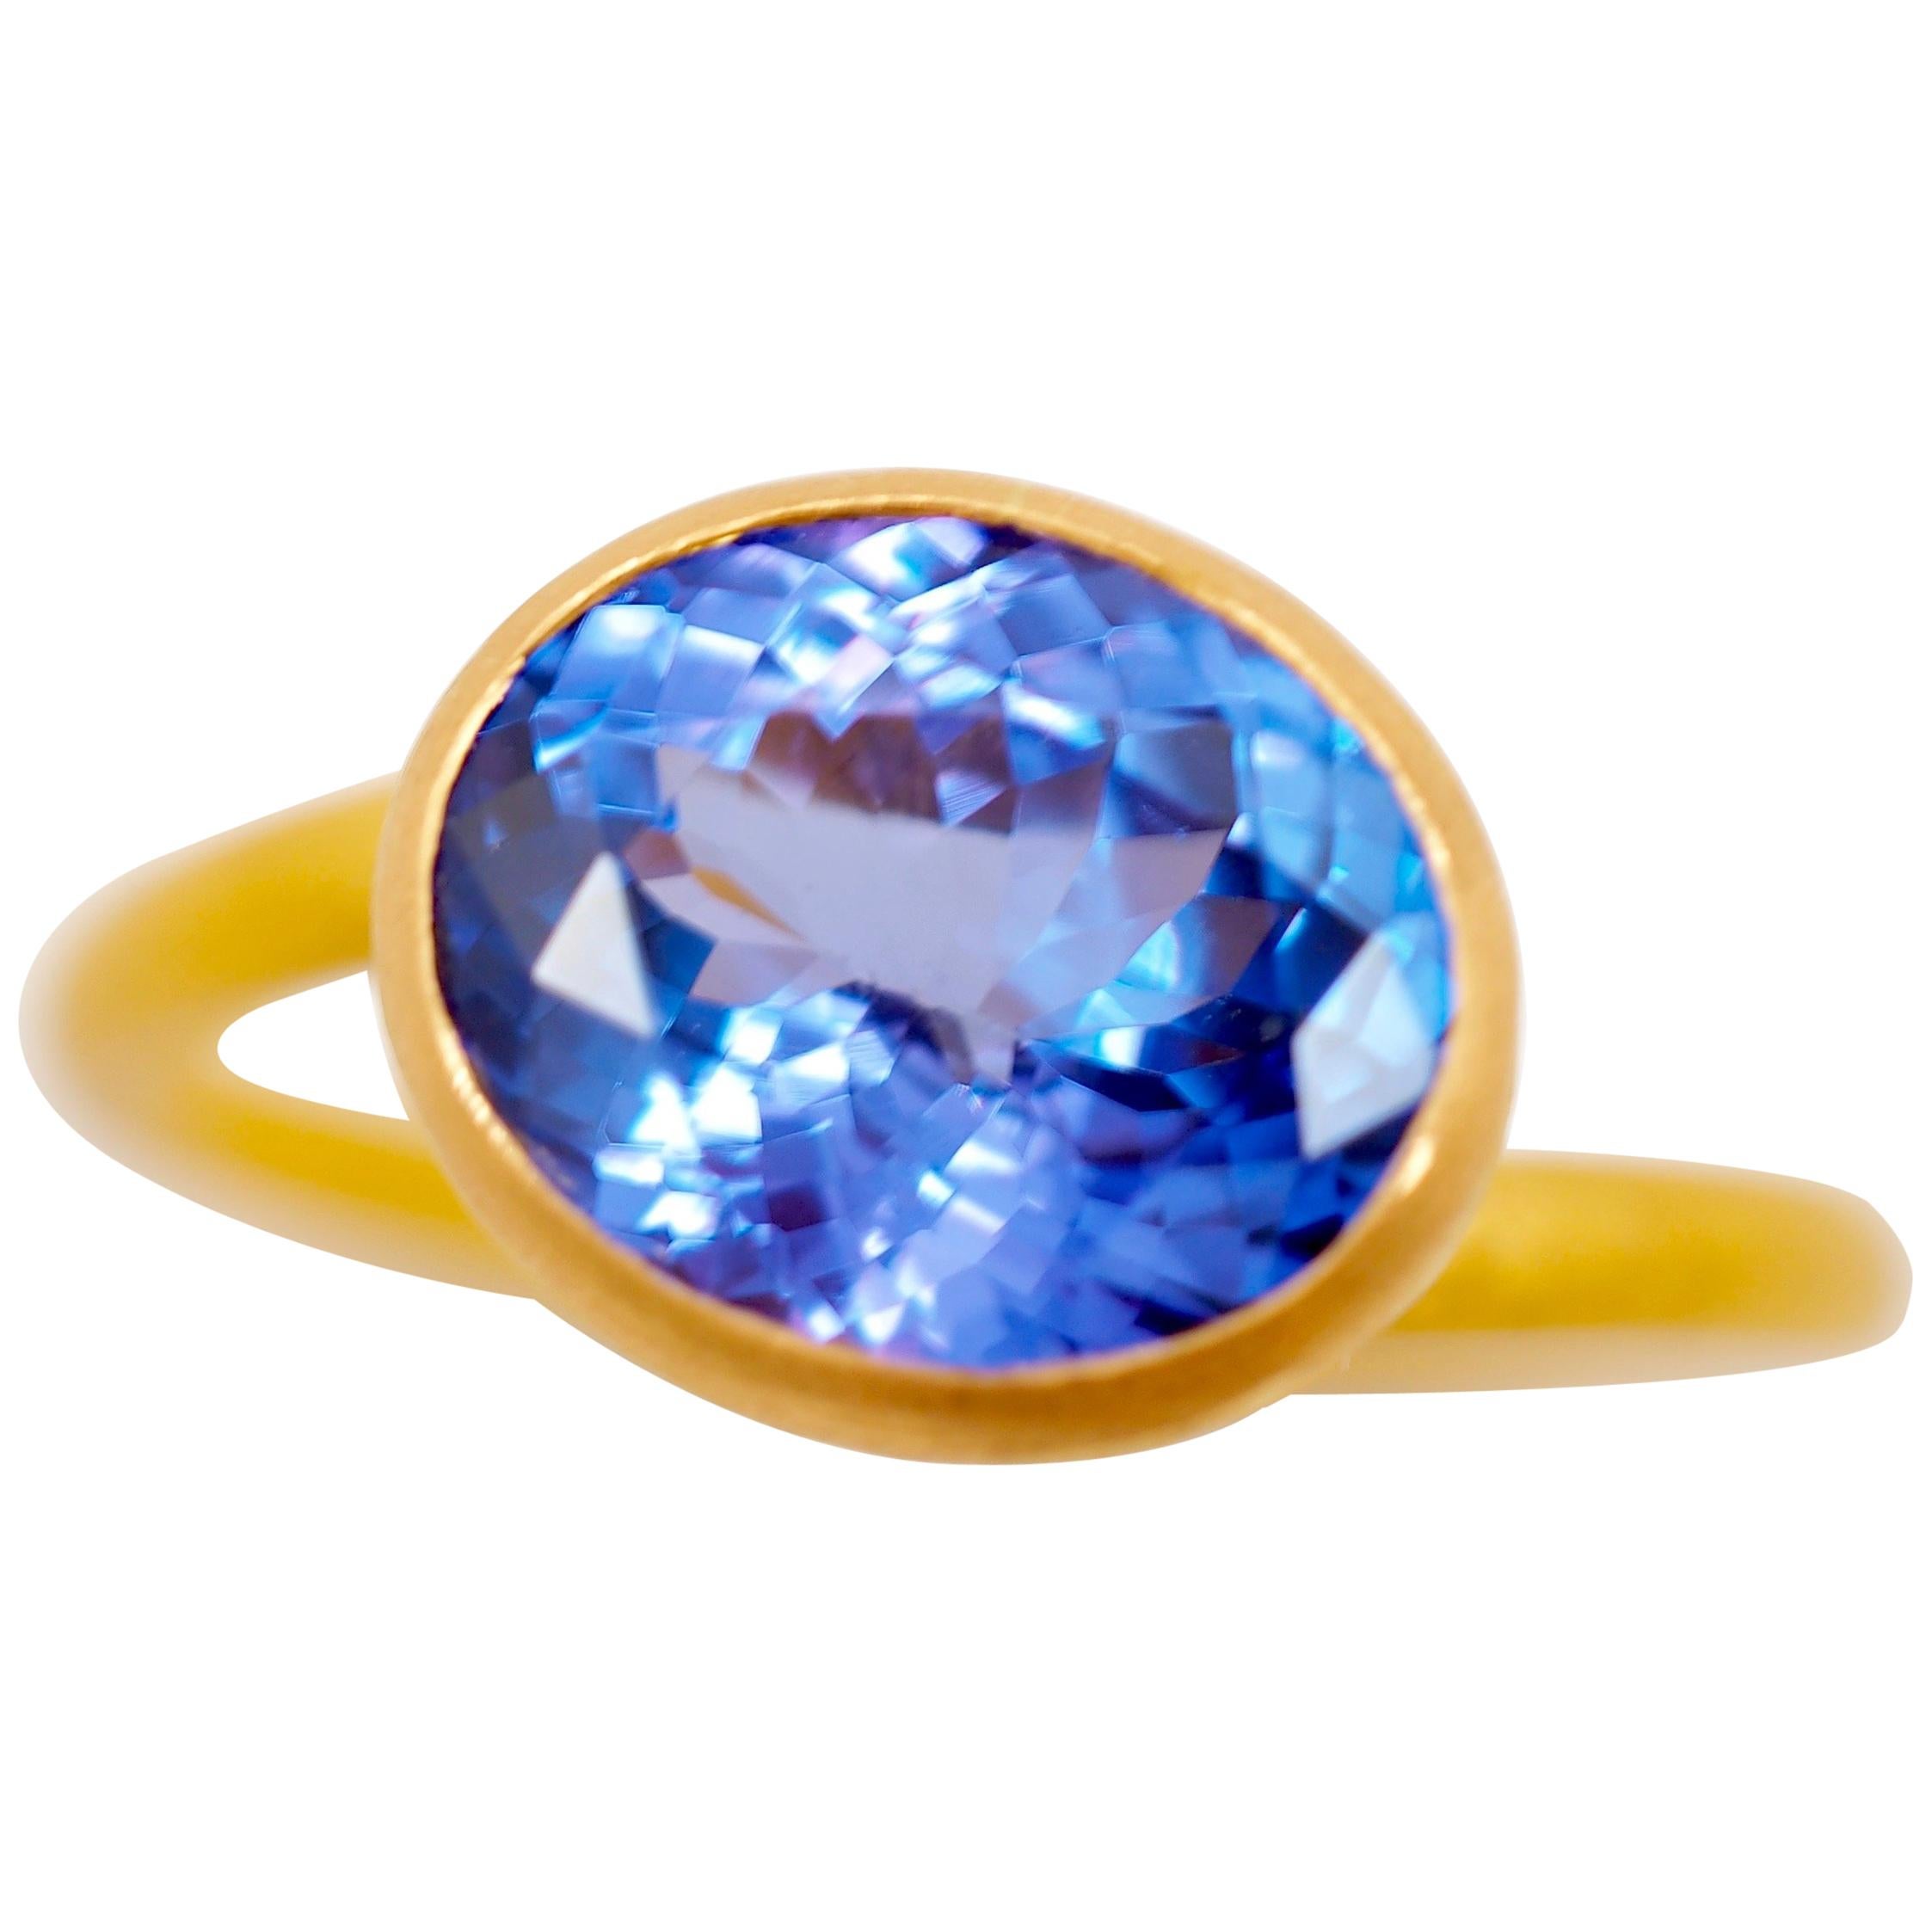 Scrives Purple Blue Tanzanite 22 Karat Gold Ring